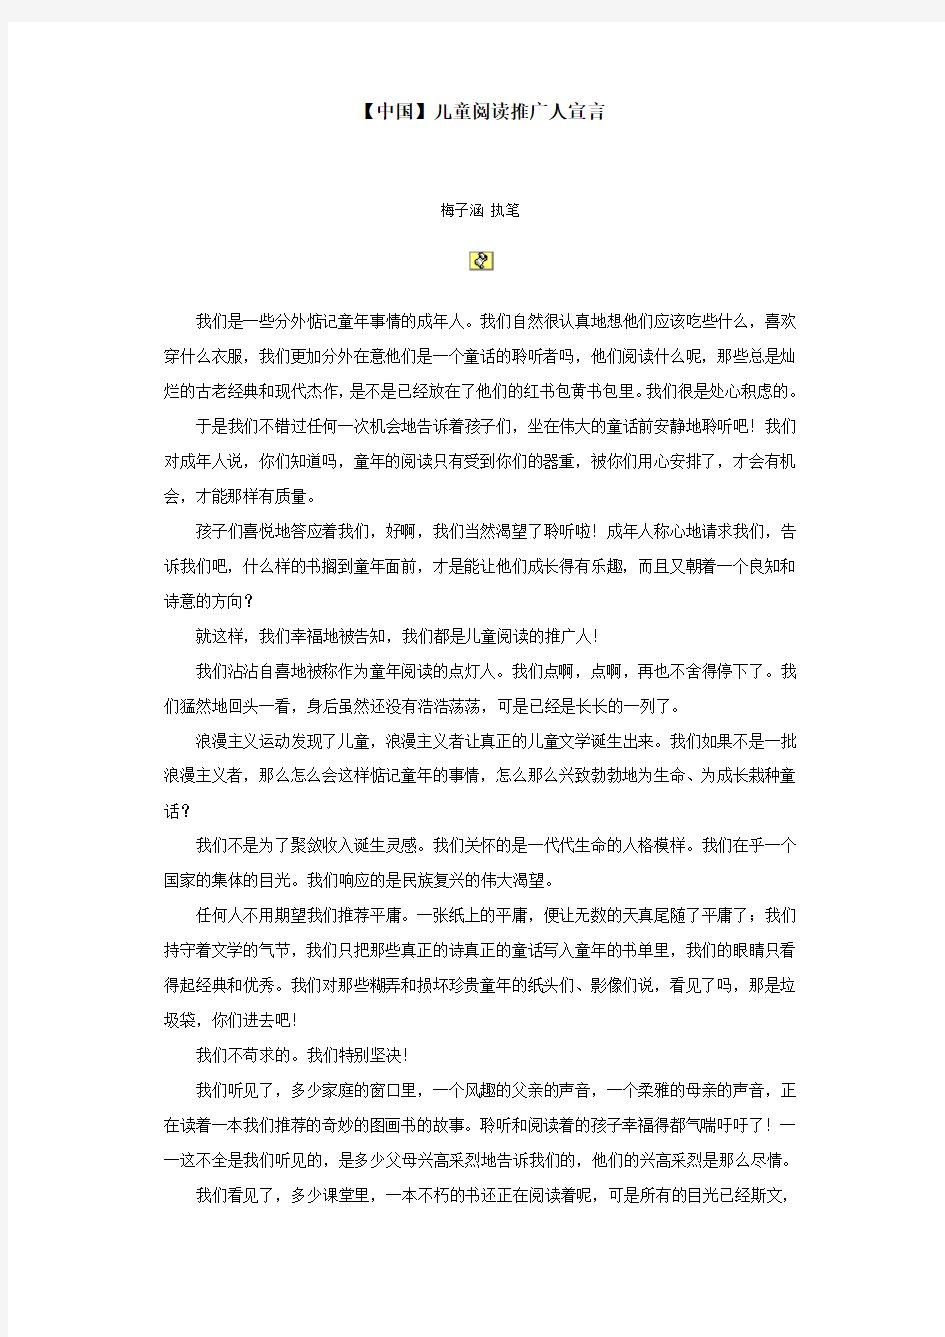 【中国】儿童阅读推广人宣言